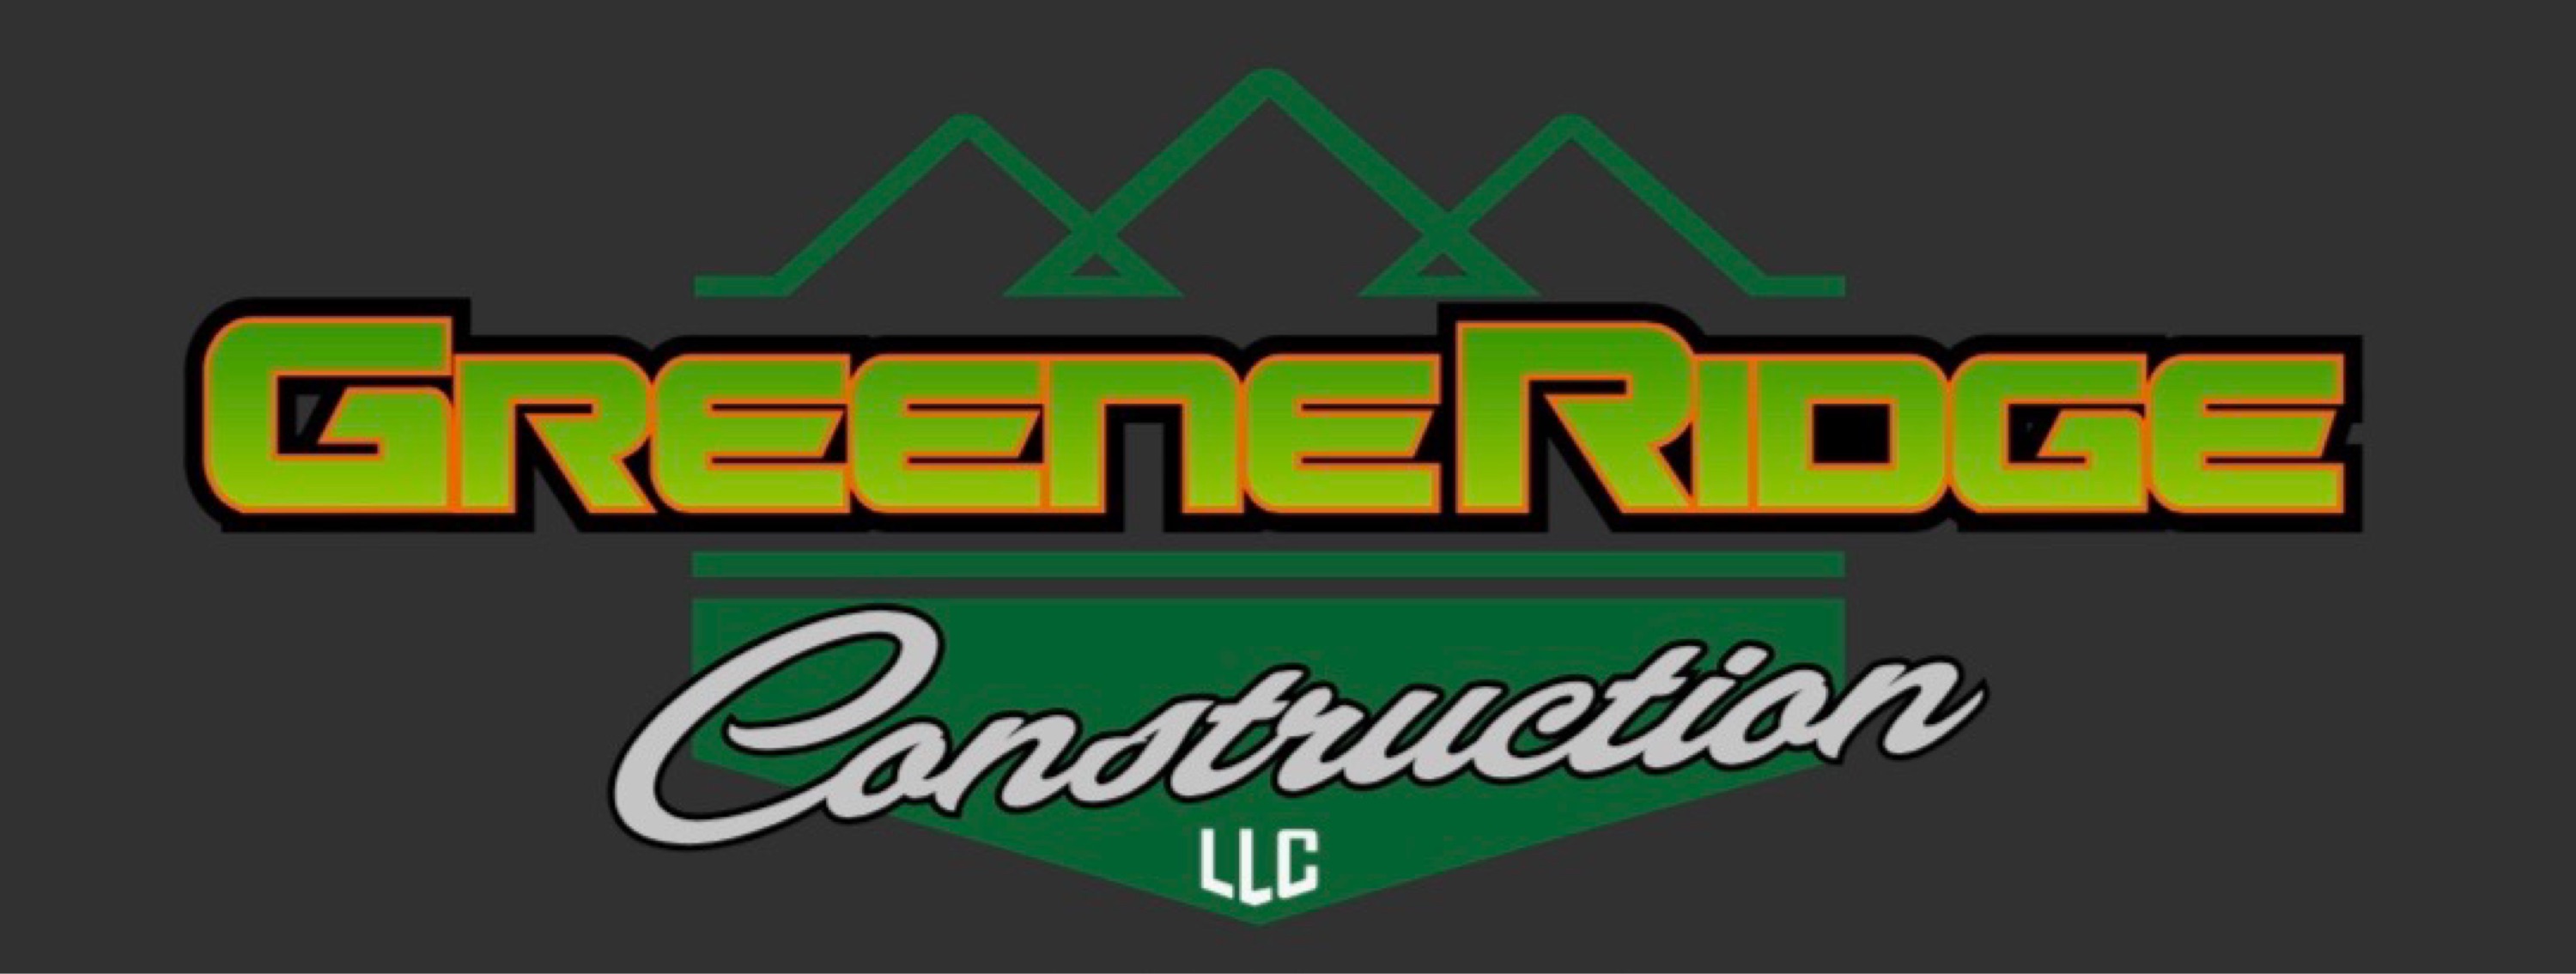 Greene Ridge Landscaping Logo